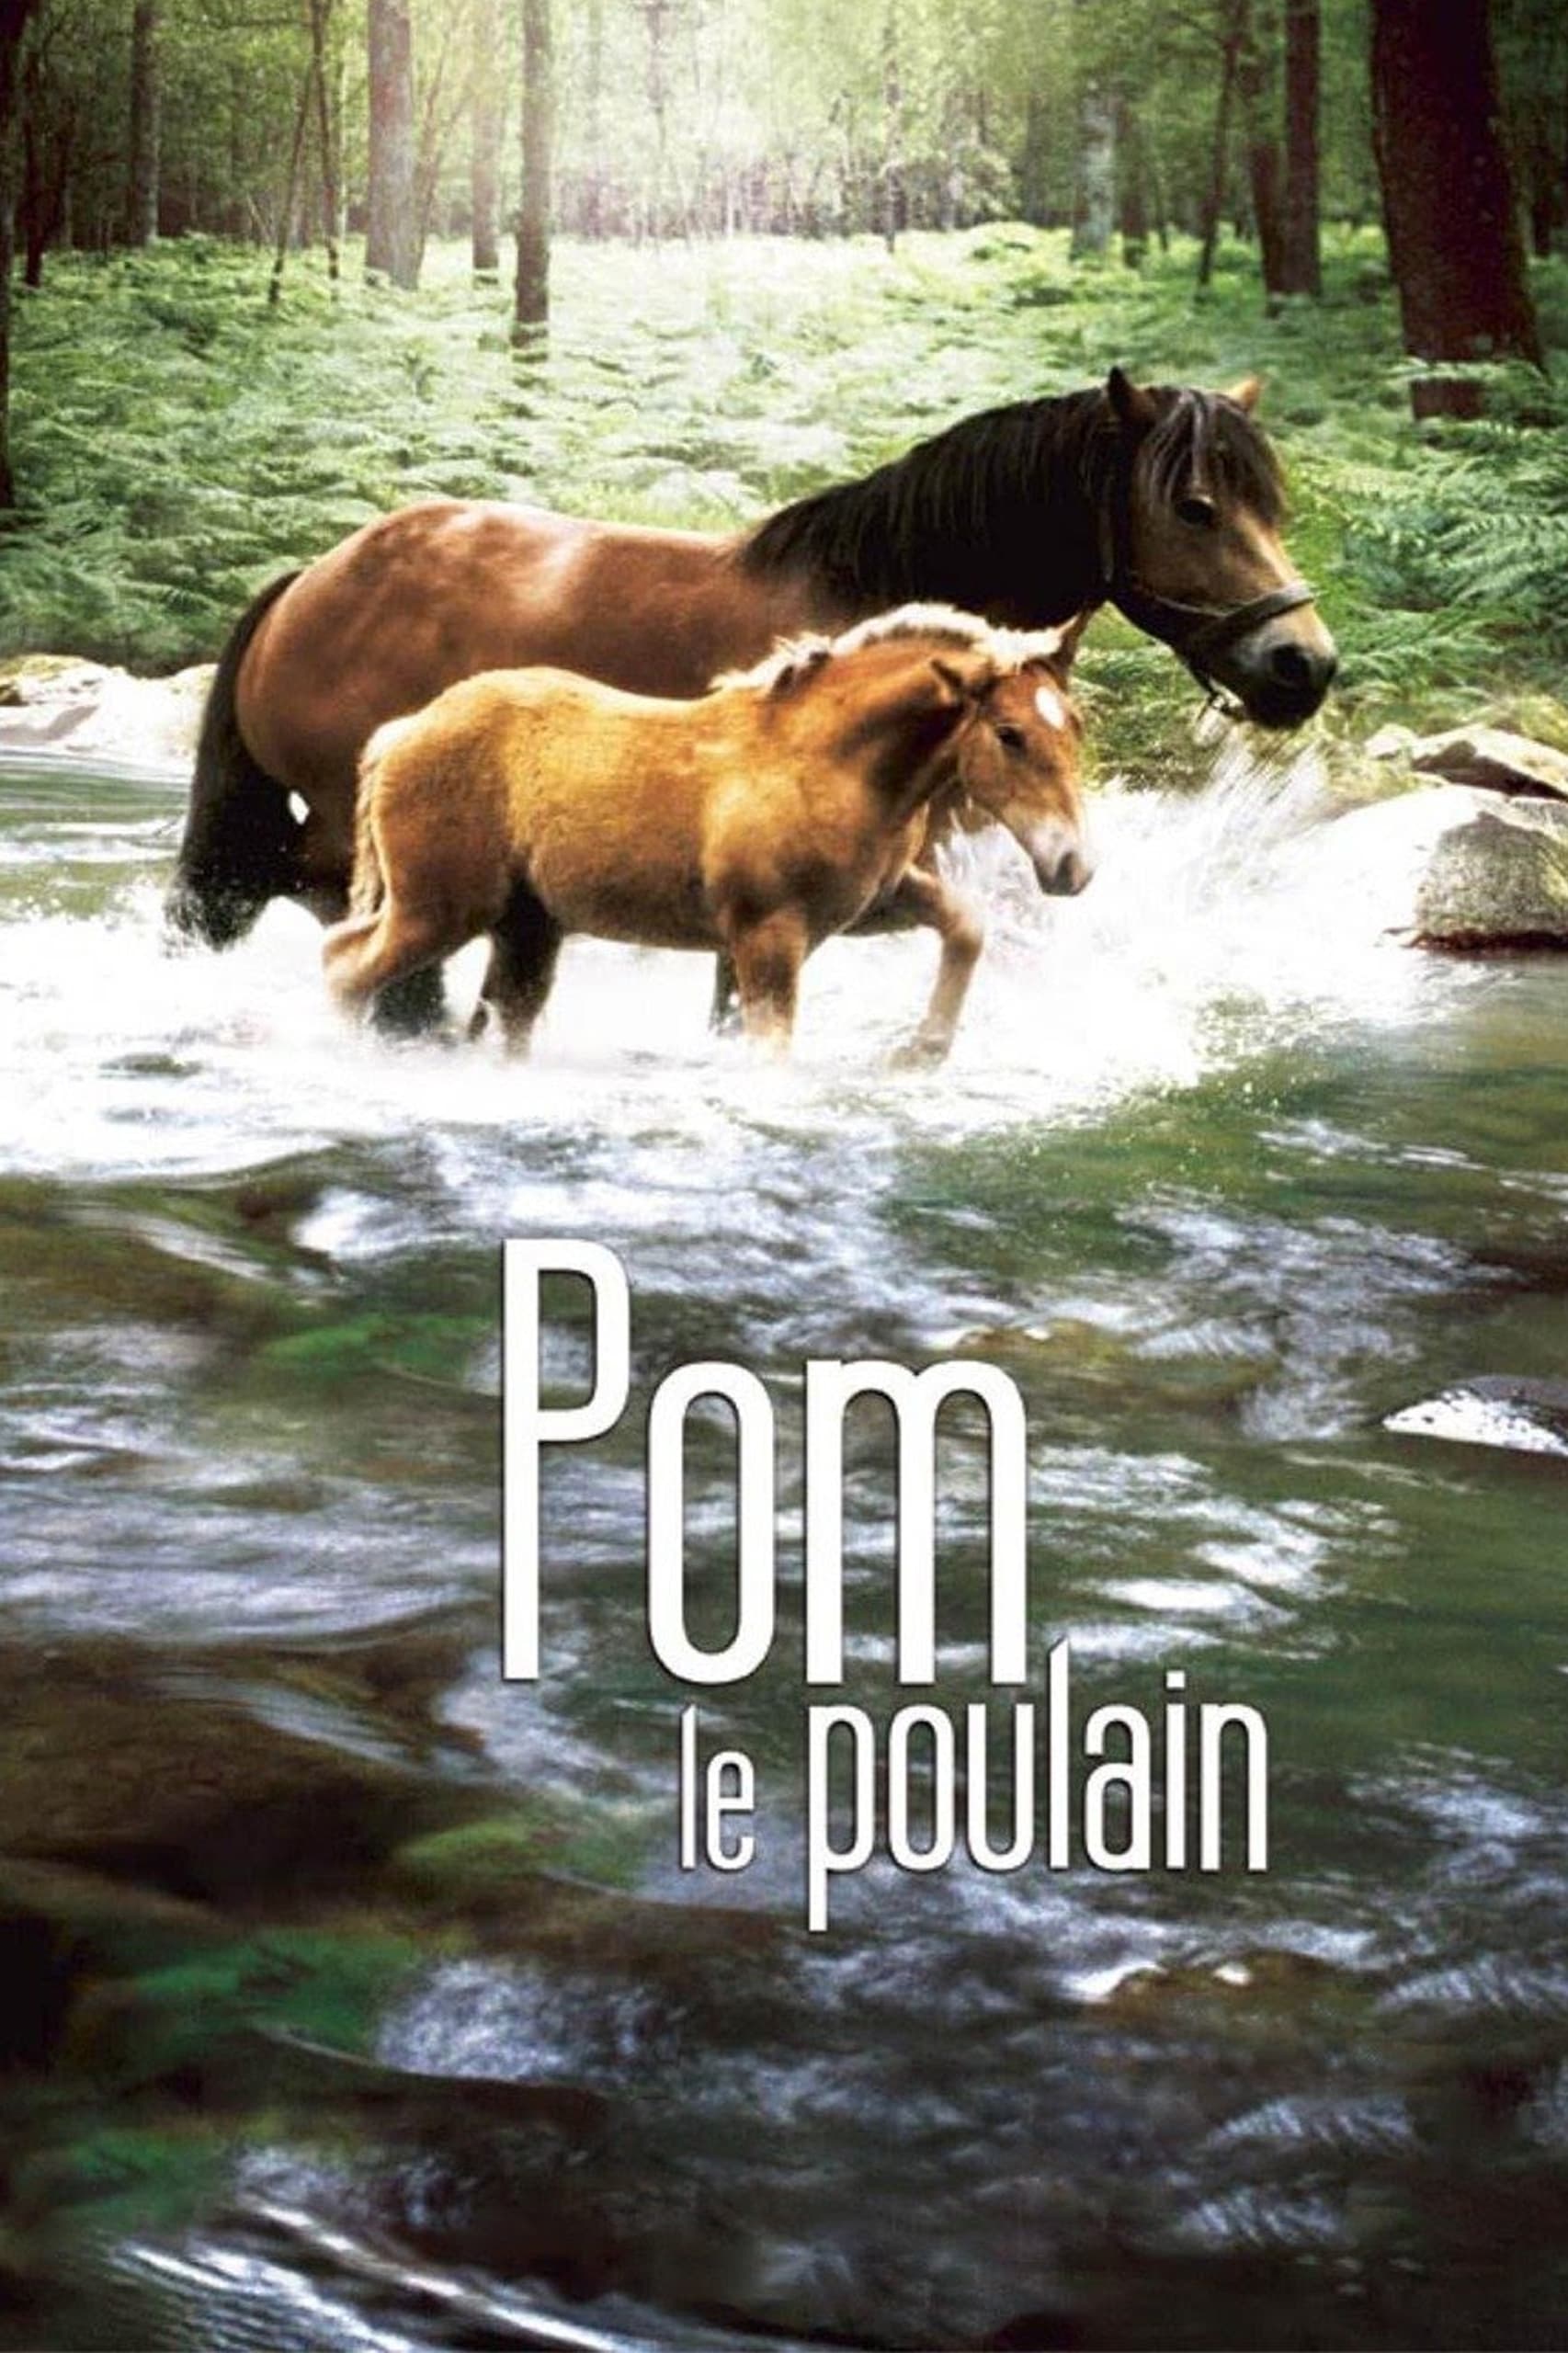 Pom, le poulain (2006)